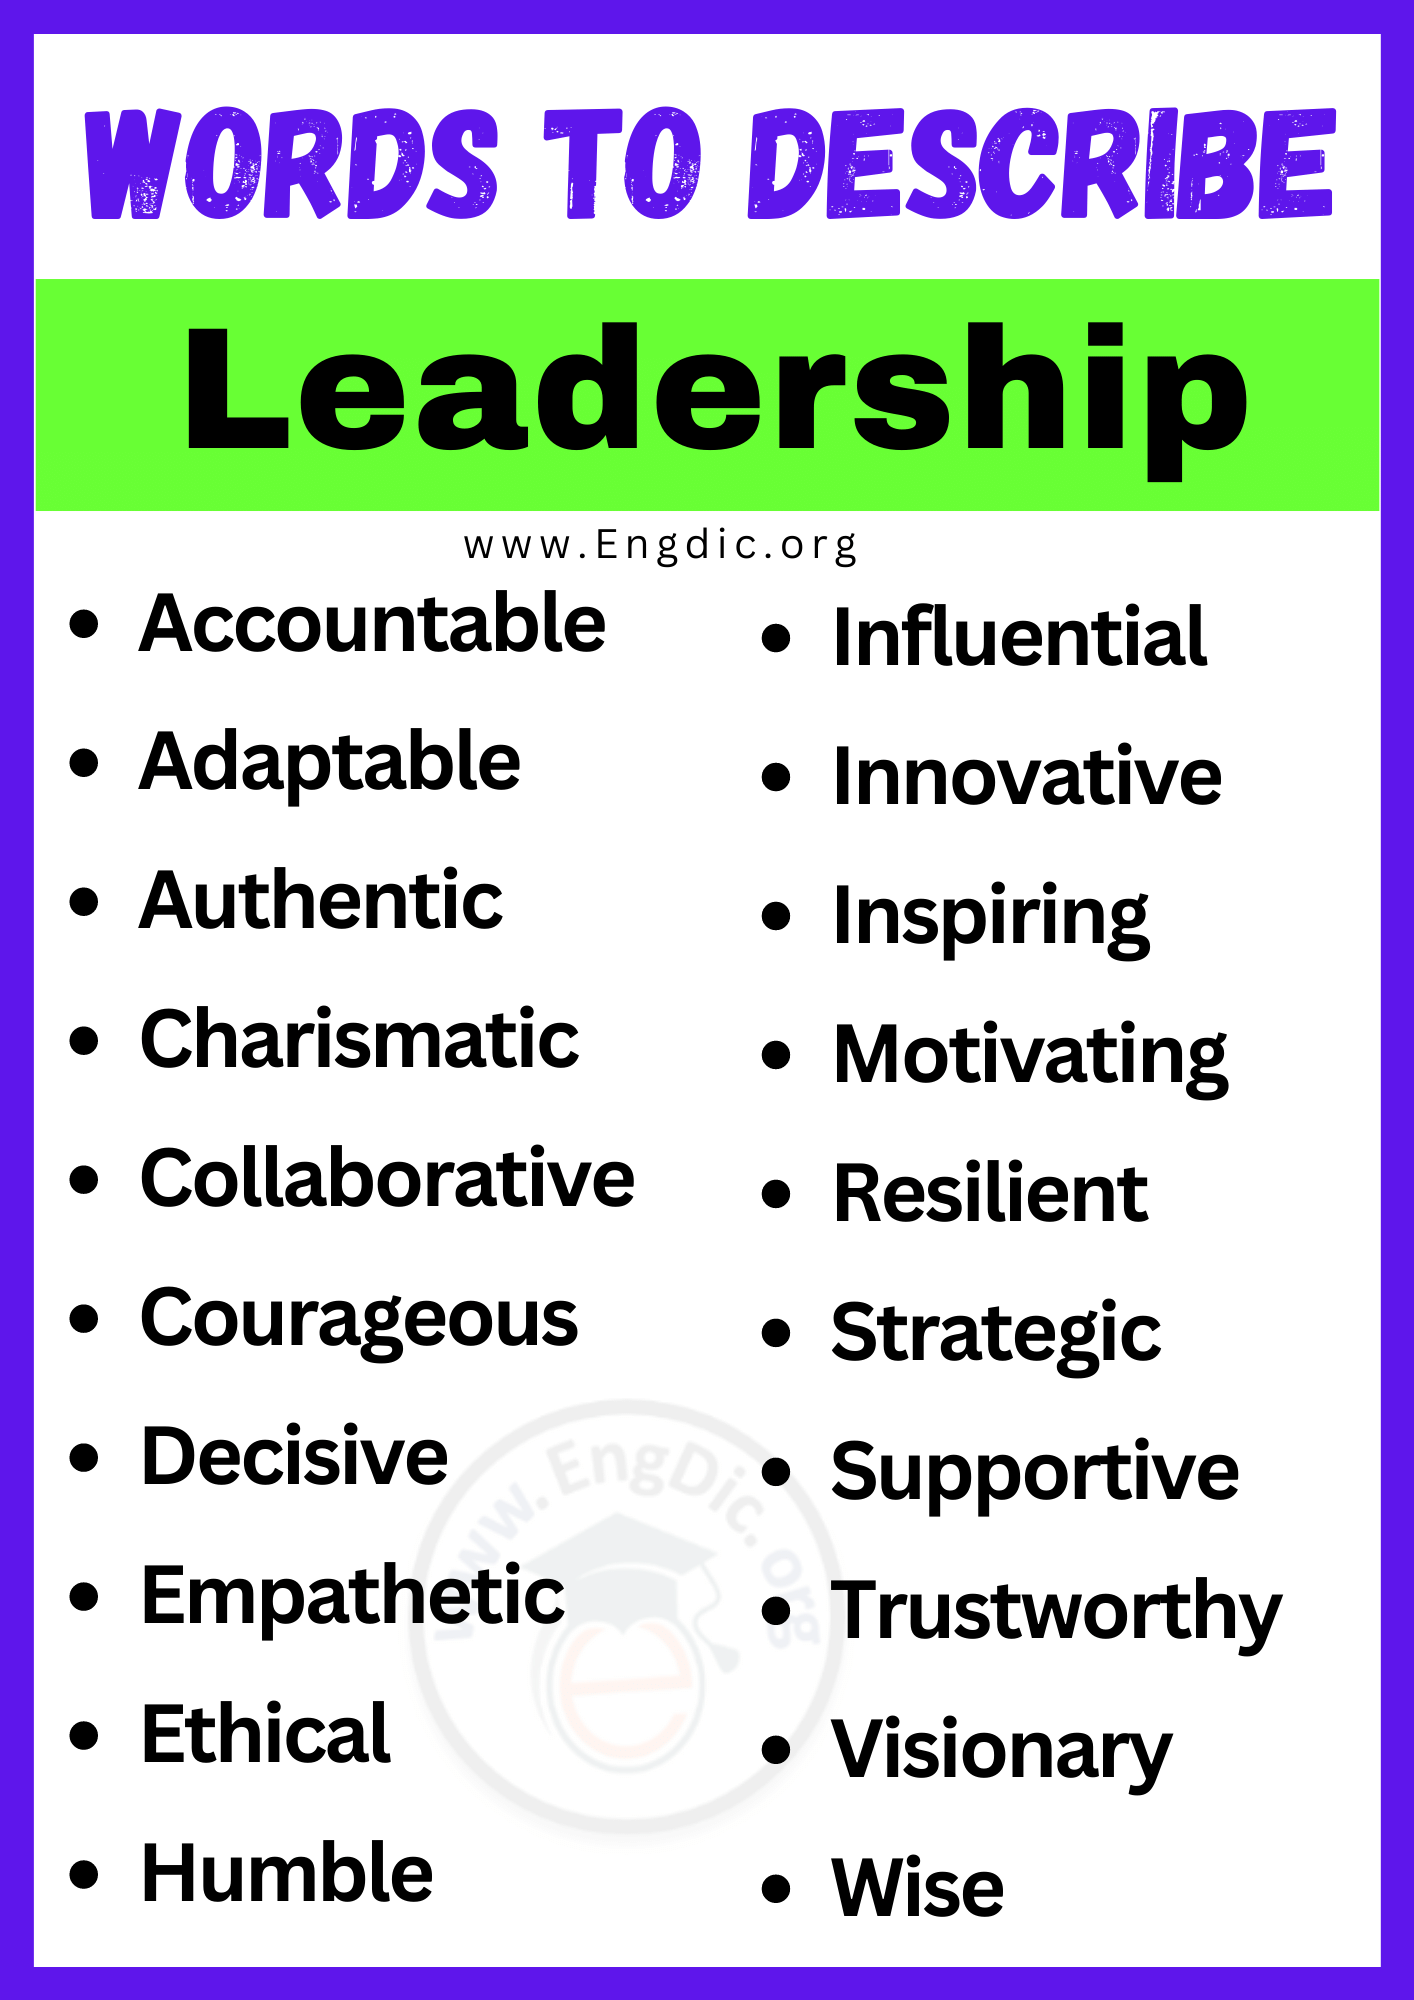 Words to Describe Leadership